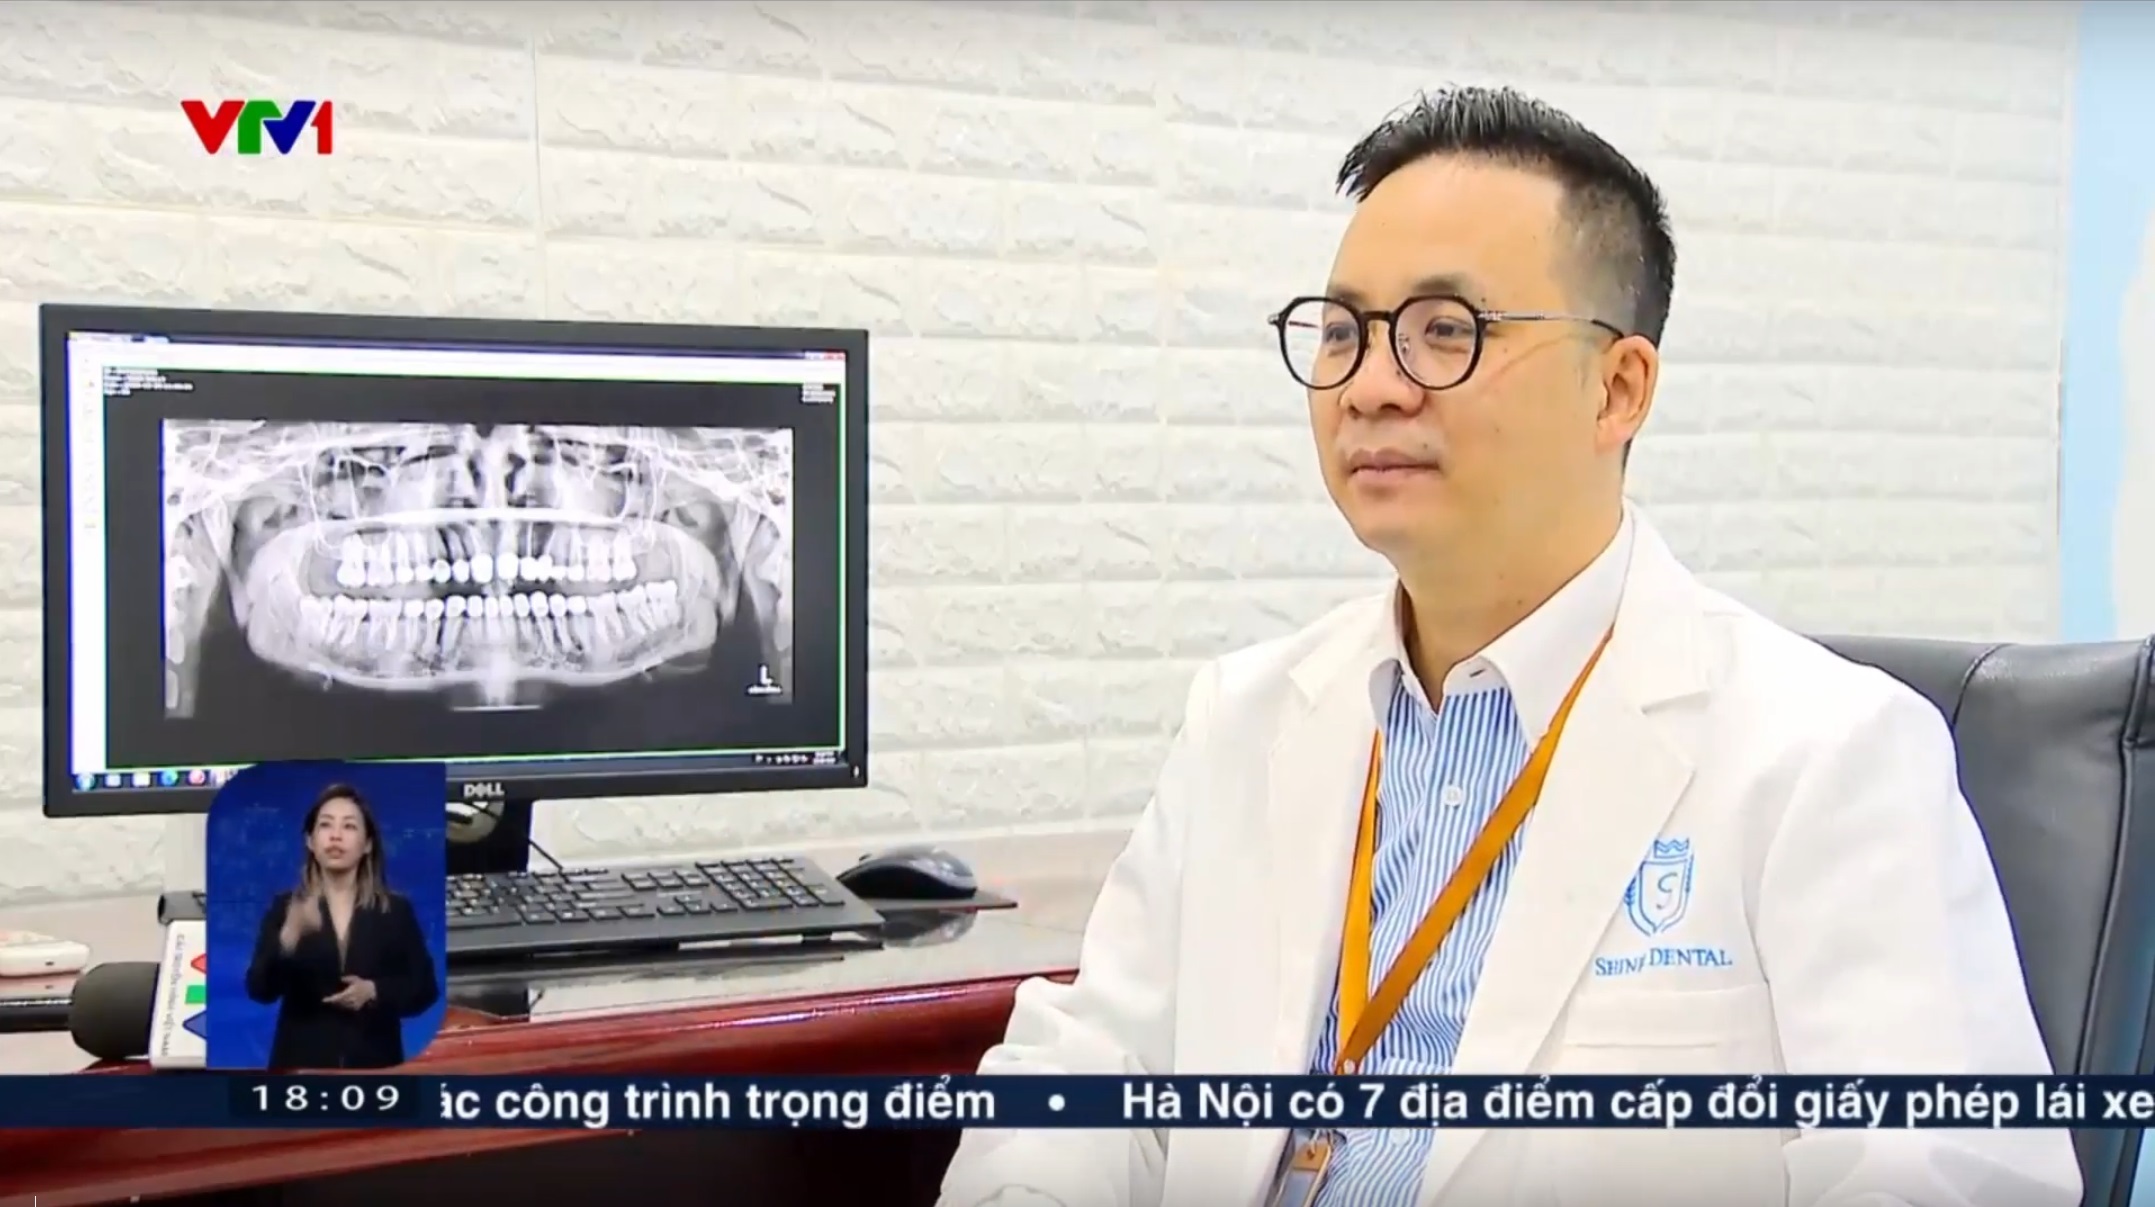 Bác sĩ Nguyễn Văn Hoà - Giám đốc chuyên môn hệ thống Nha khoa Shinbi cho biết đã phải xử lý nhiều trường hợp liên quan tới răng sứ thẩm mỹ